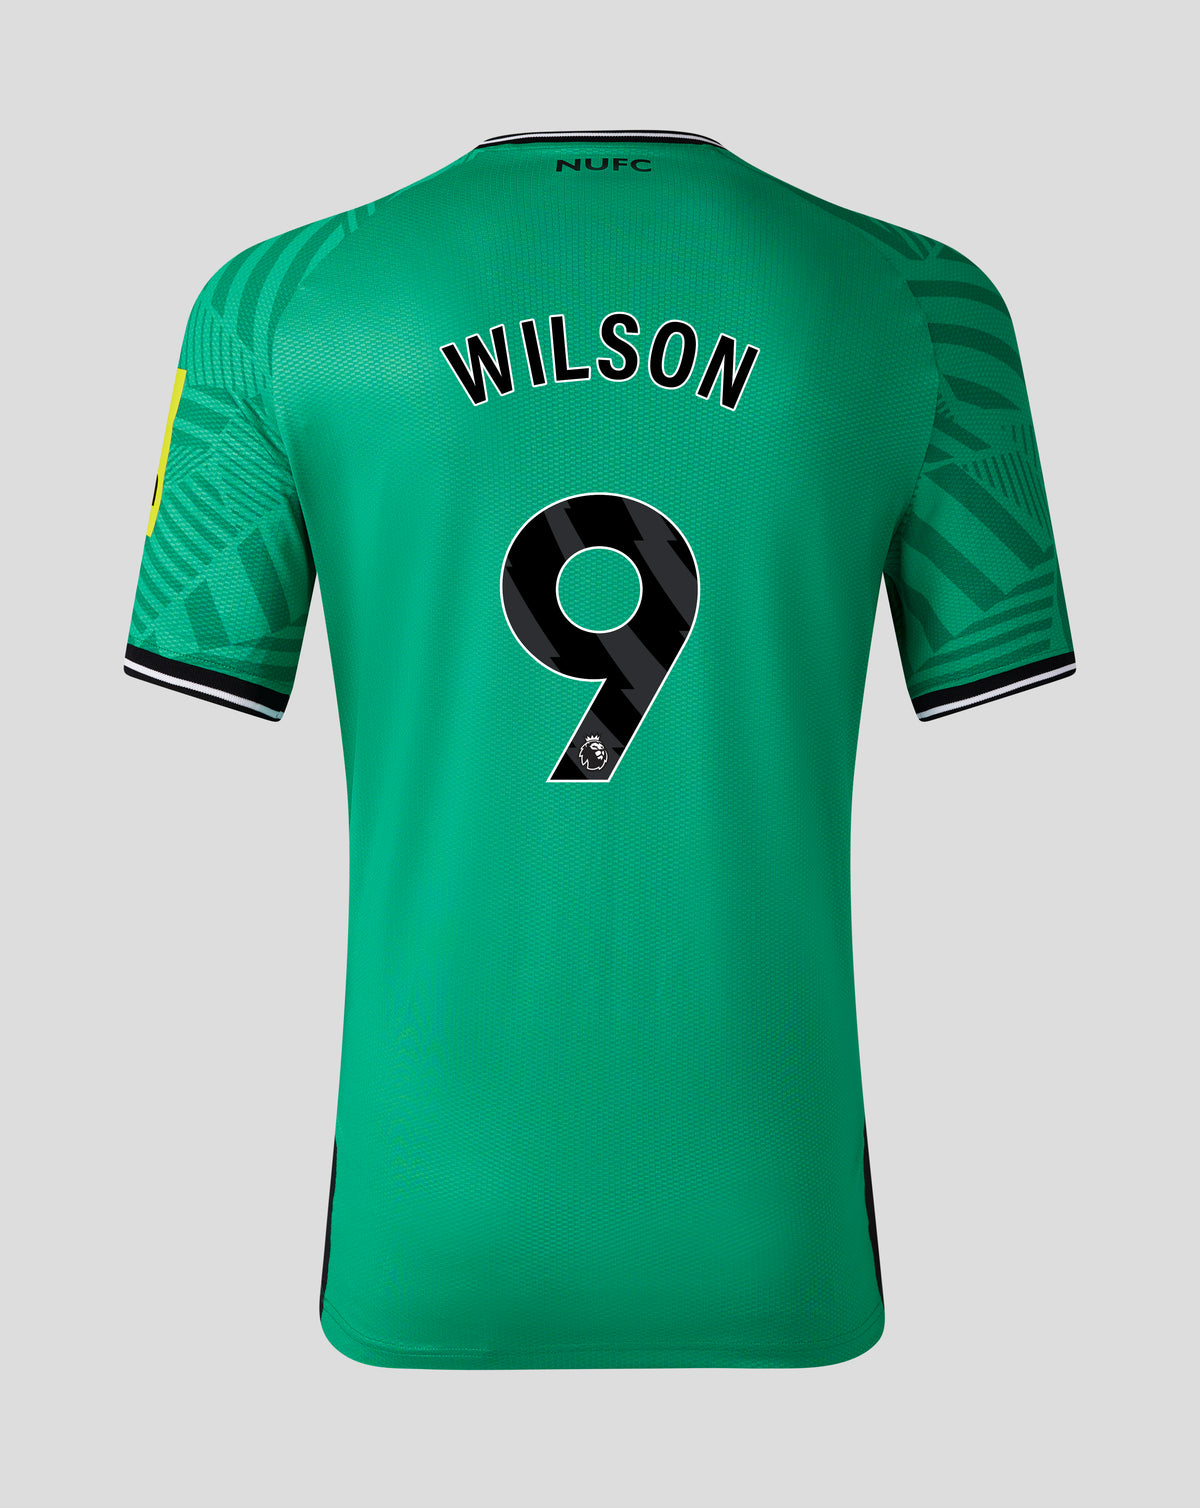 Wilson - Away 